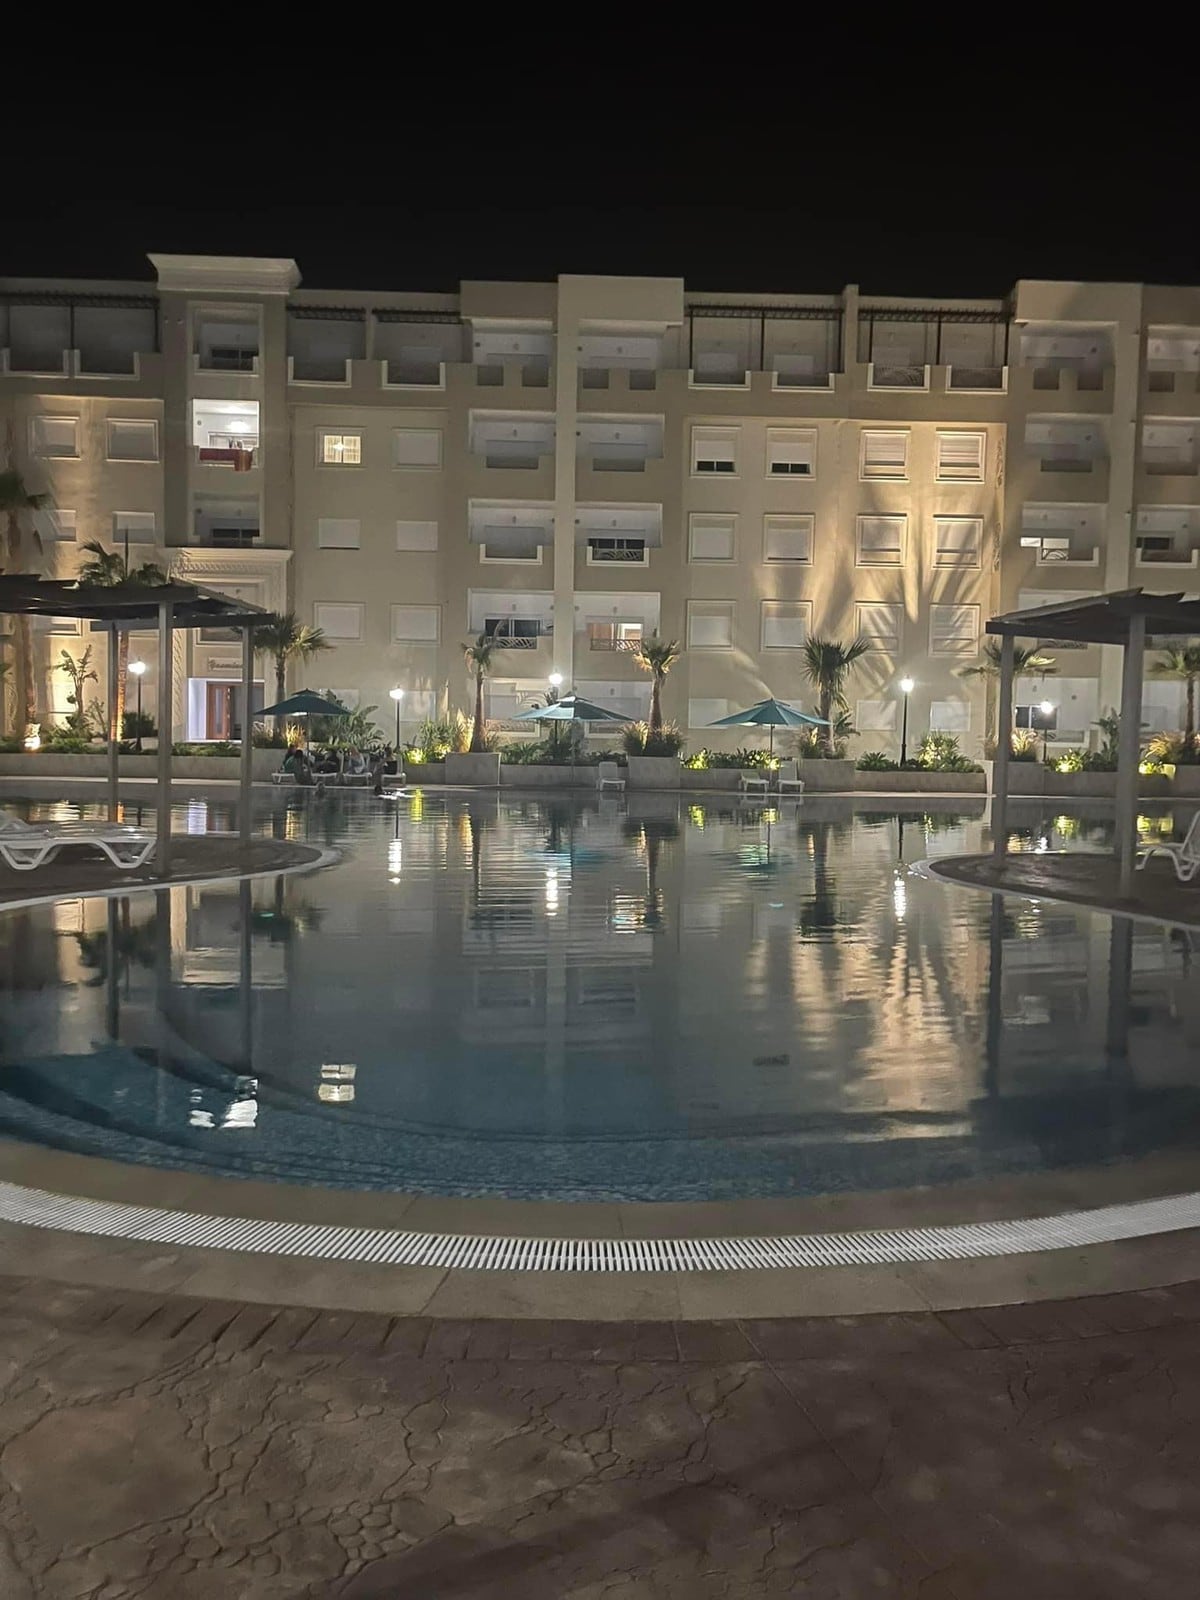 Palm Lake Resort Sousse Monastir